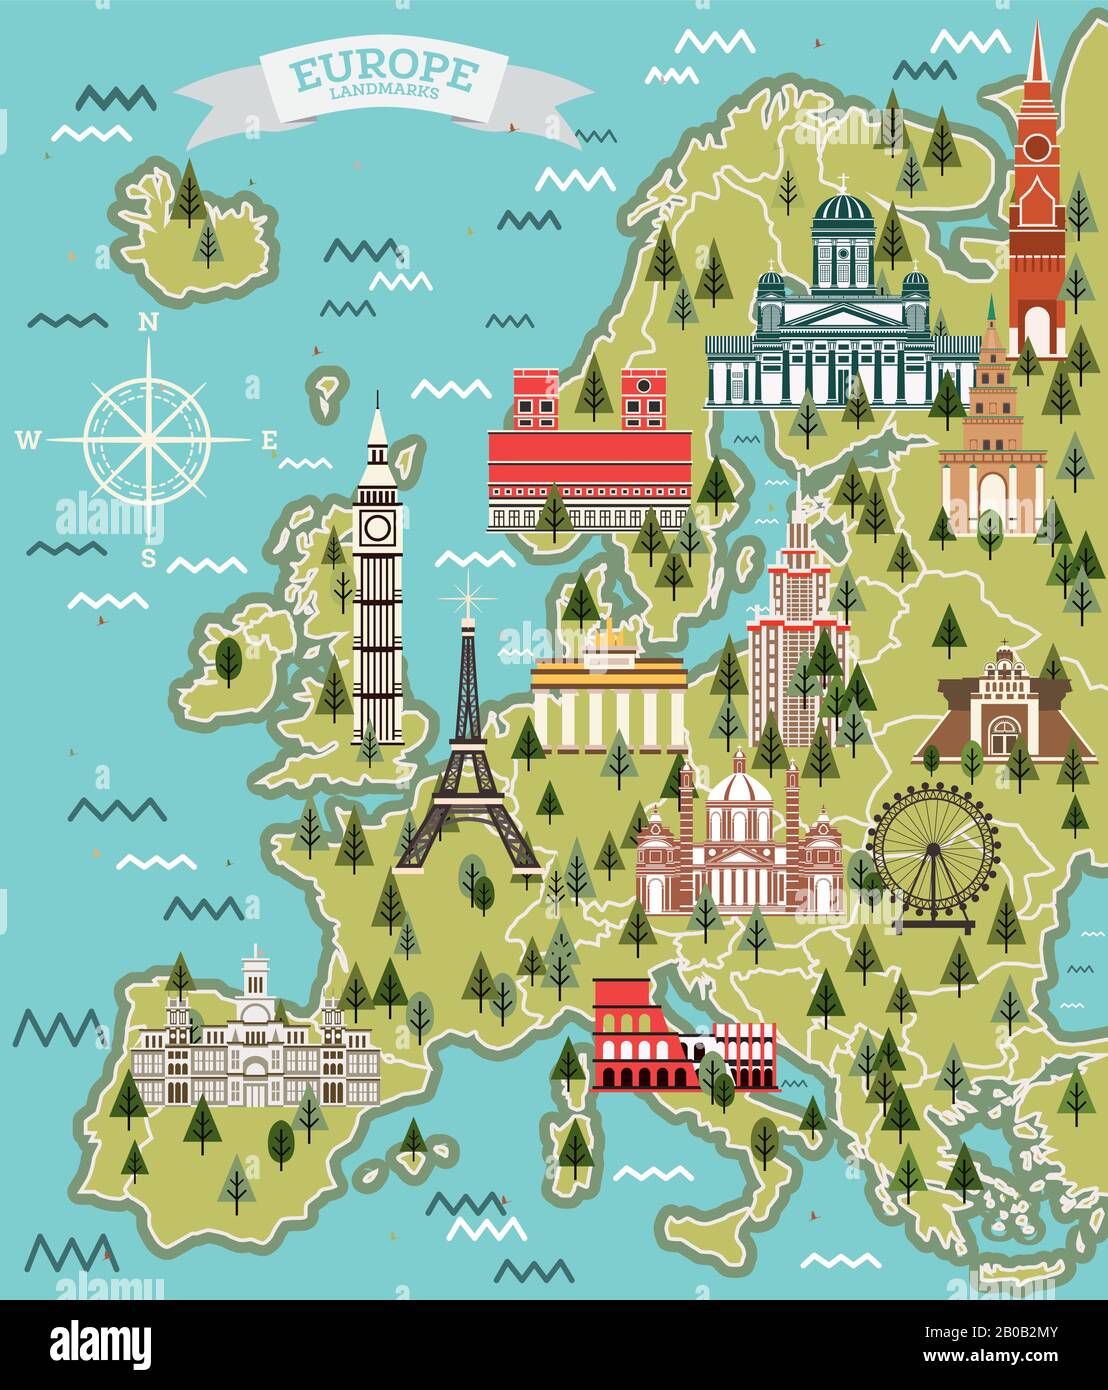 Mappa Europea Con Famosi Monumenti Storici. Illustrazione Vettoriale. Concetto Di Viaggio E Turismo. Illustrazione Vettoriale